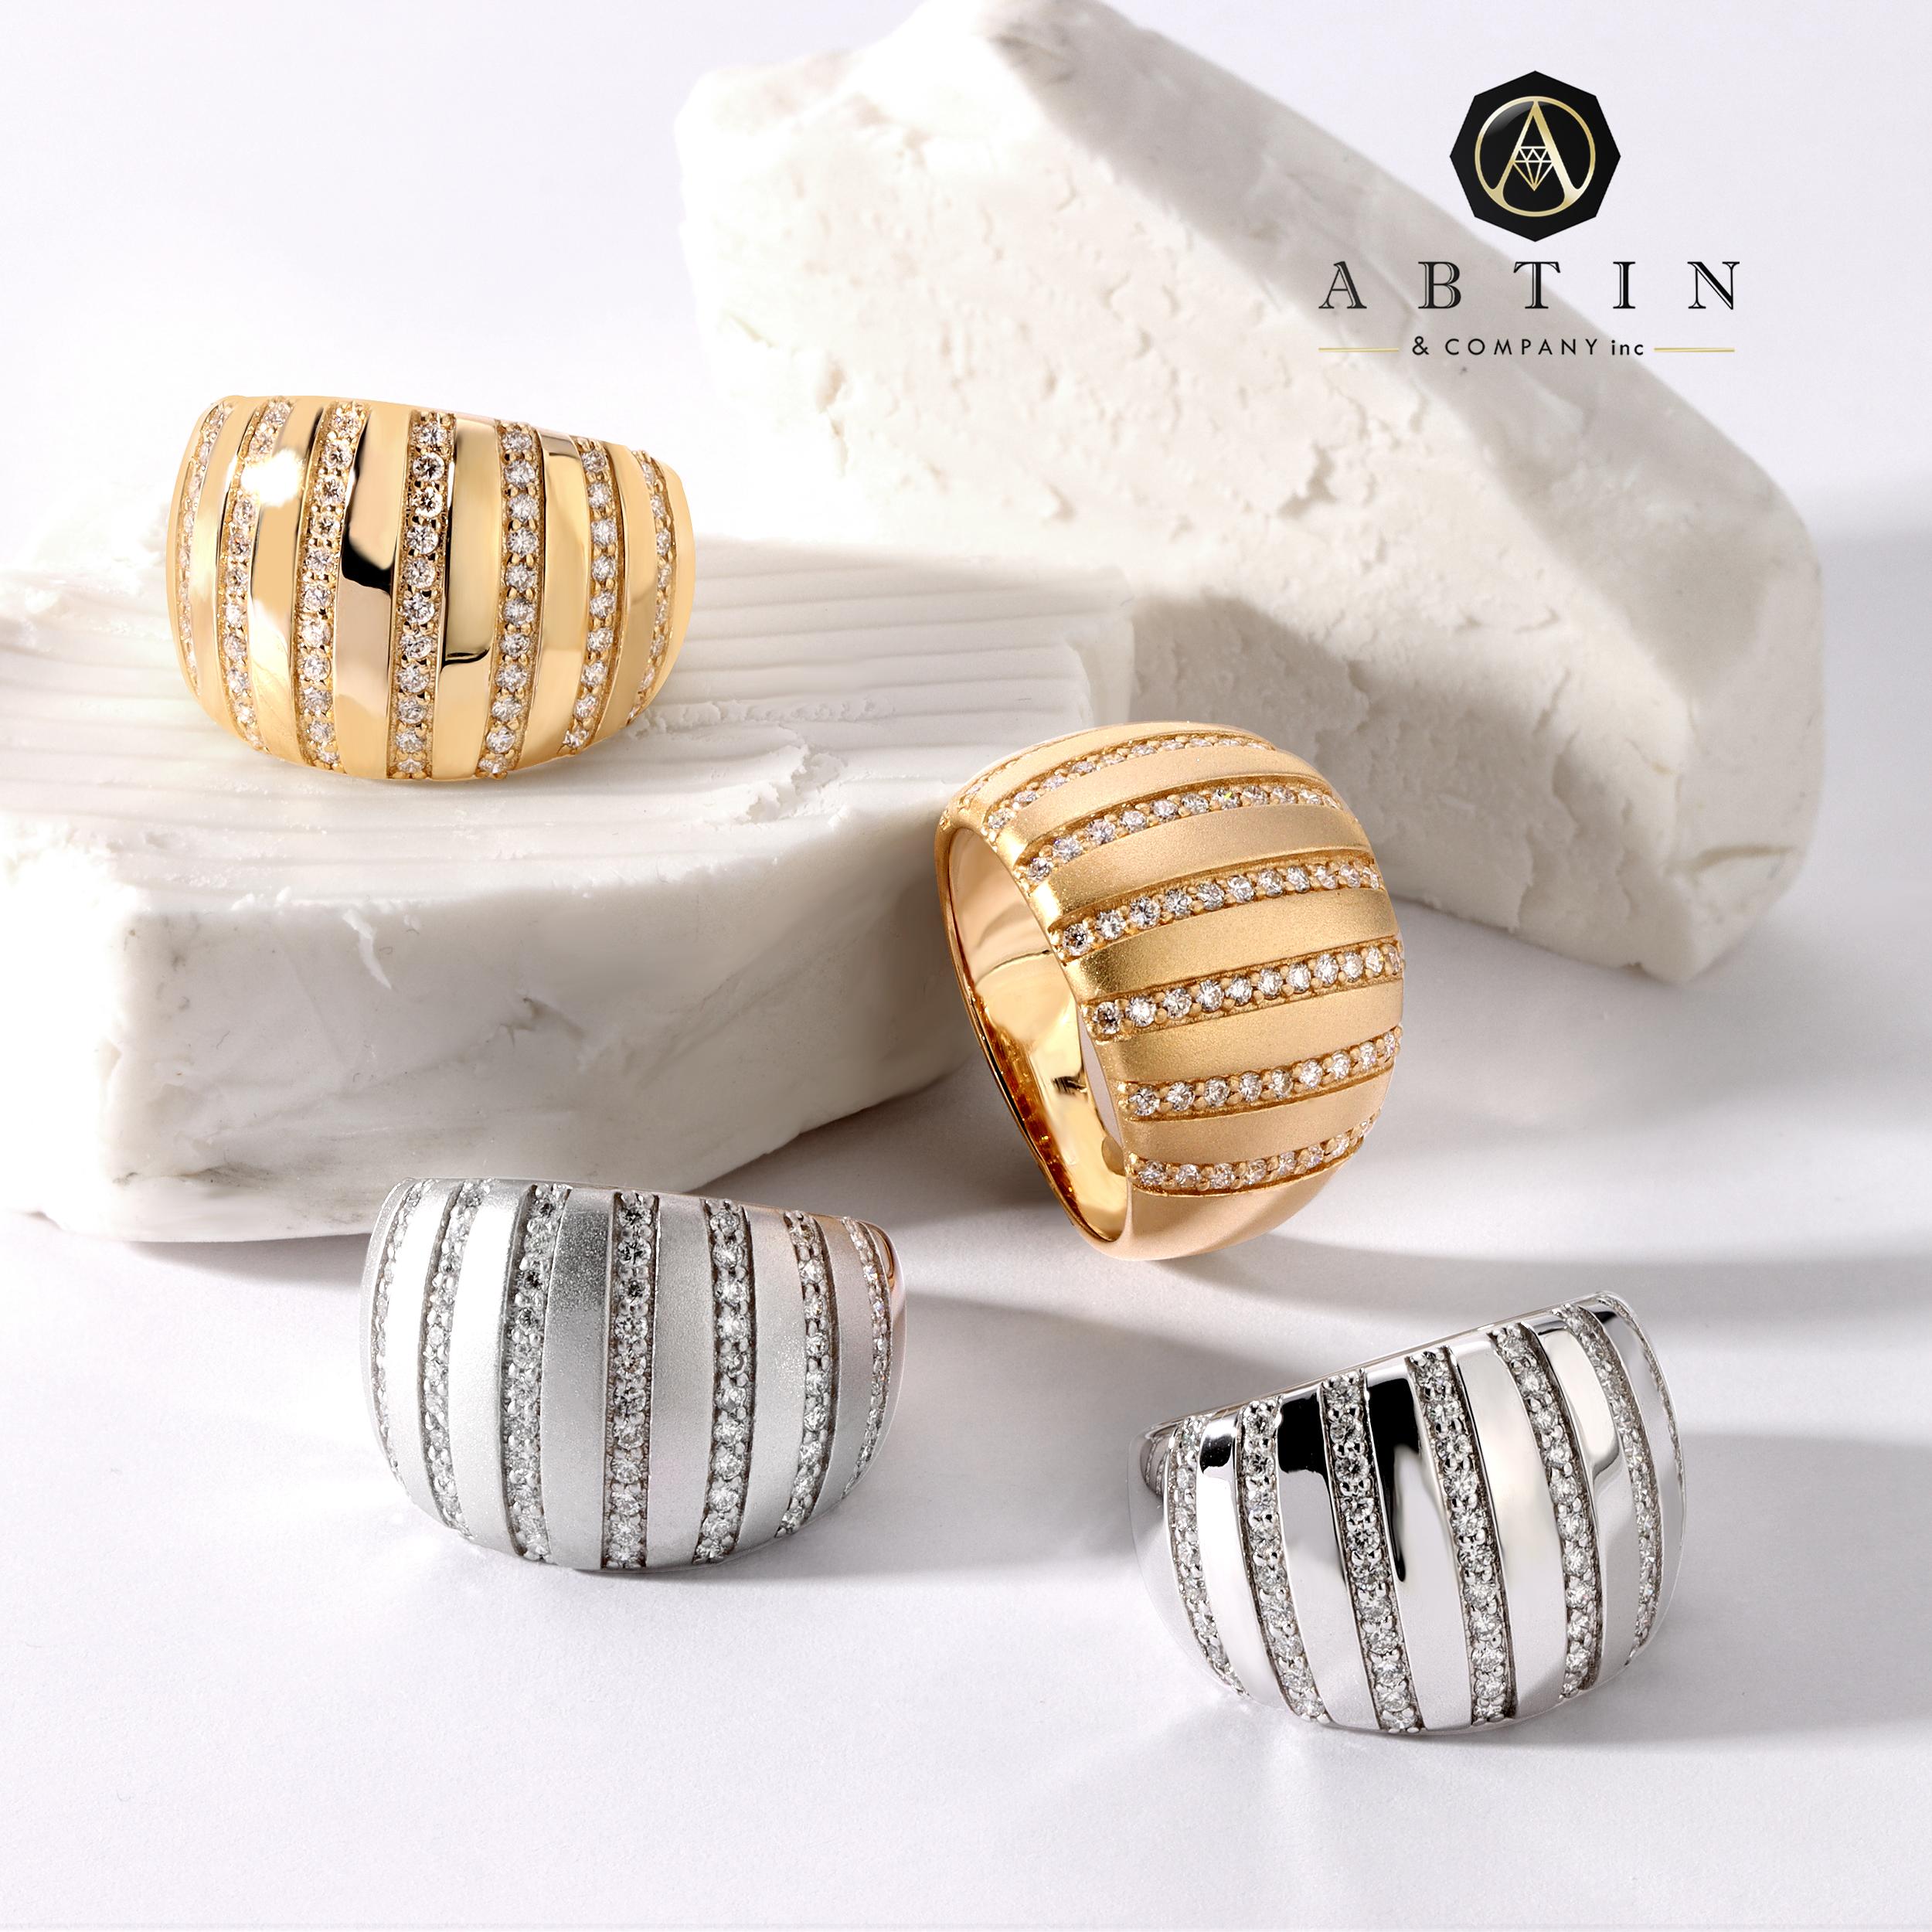 Dieser moderne Ring aus 14-karätigem Gold zeichnet sich durch gestreifte Diamanten aus, die die goldene Oberfläche sanft abrunden und durch perfekt gesetzte Reihen von Pave-Diamanten ergänzt werden. Die Details an diesem Ring sind kompliziert und